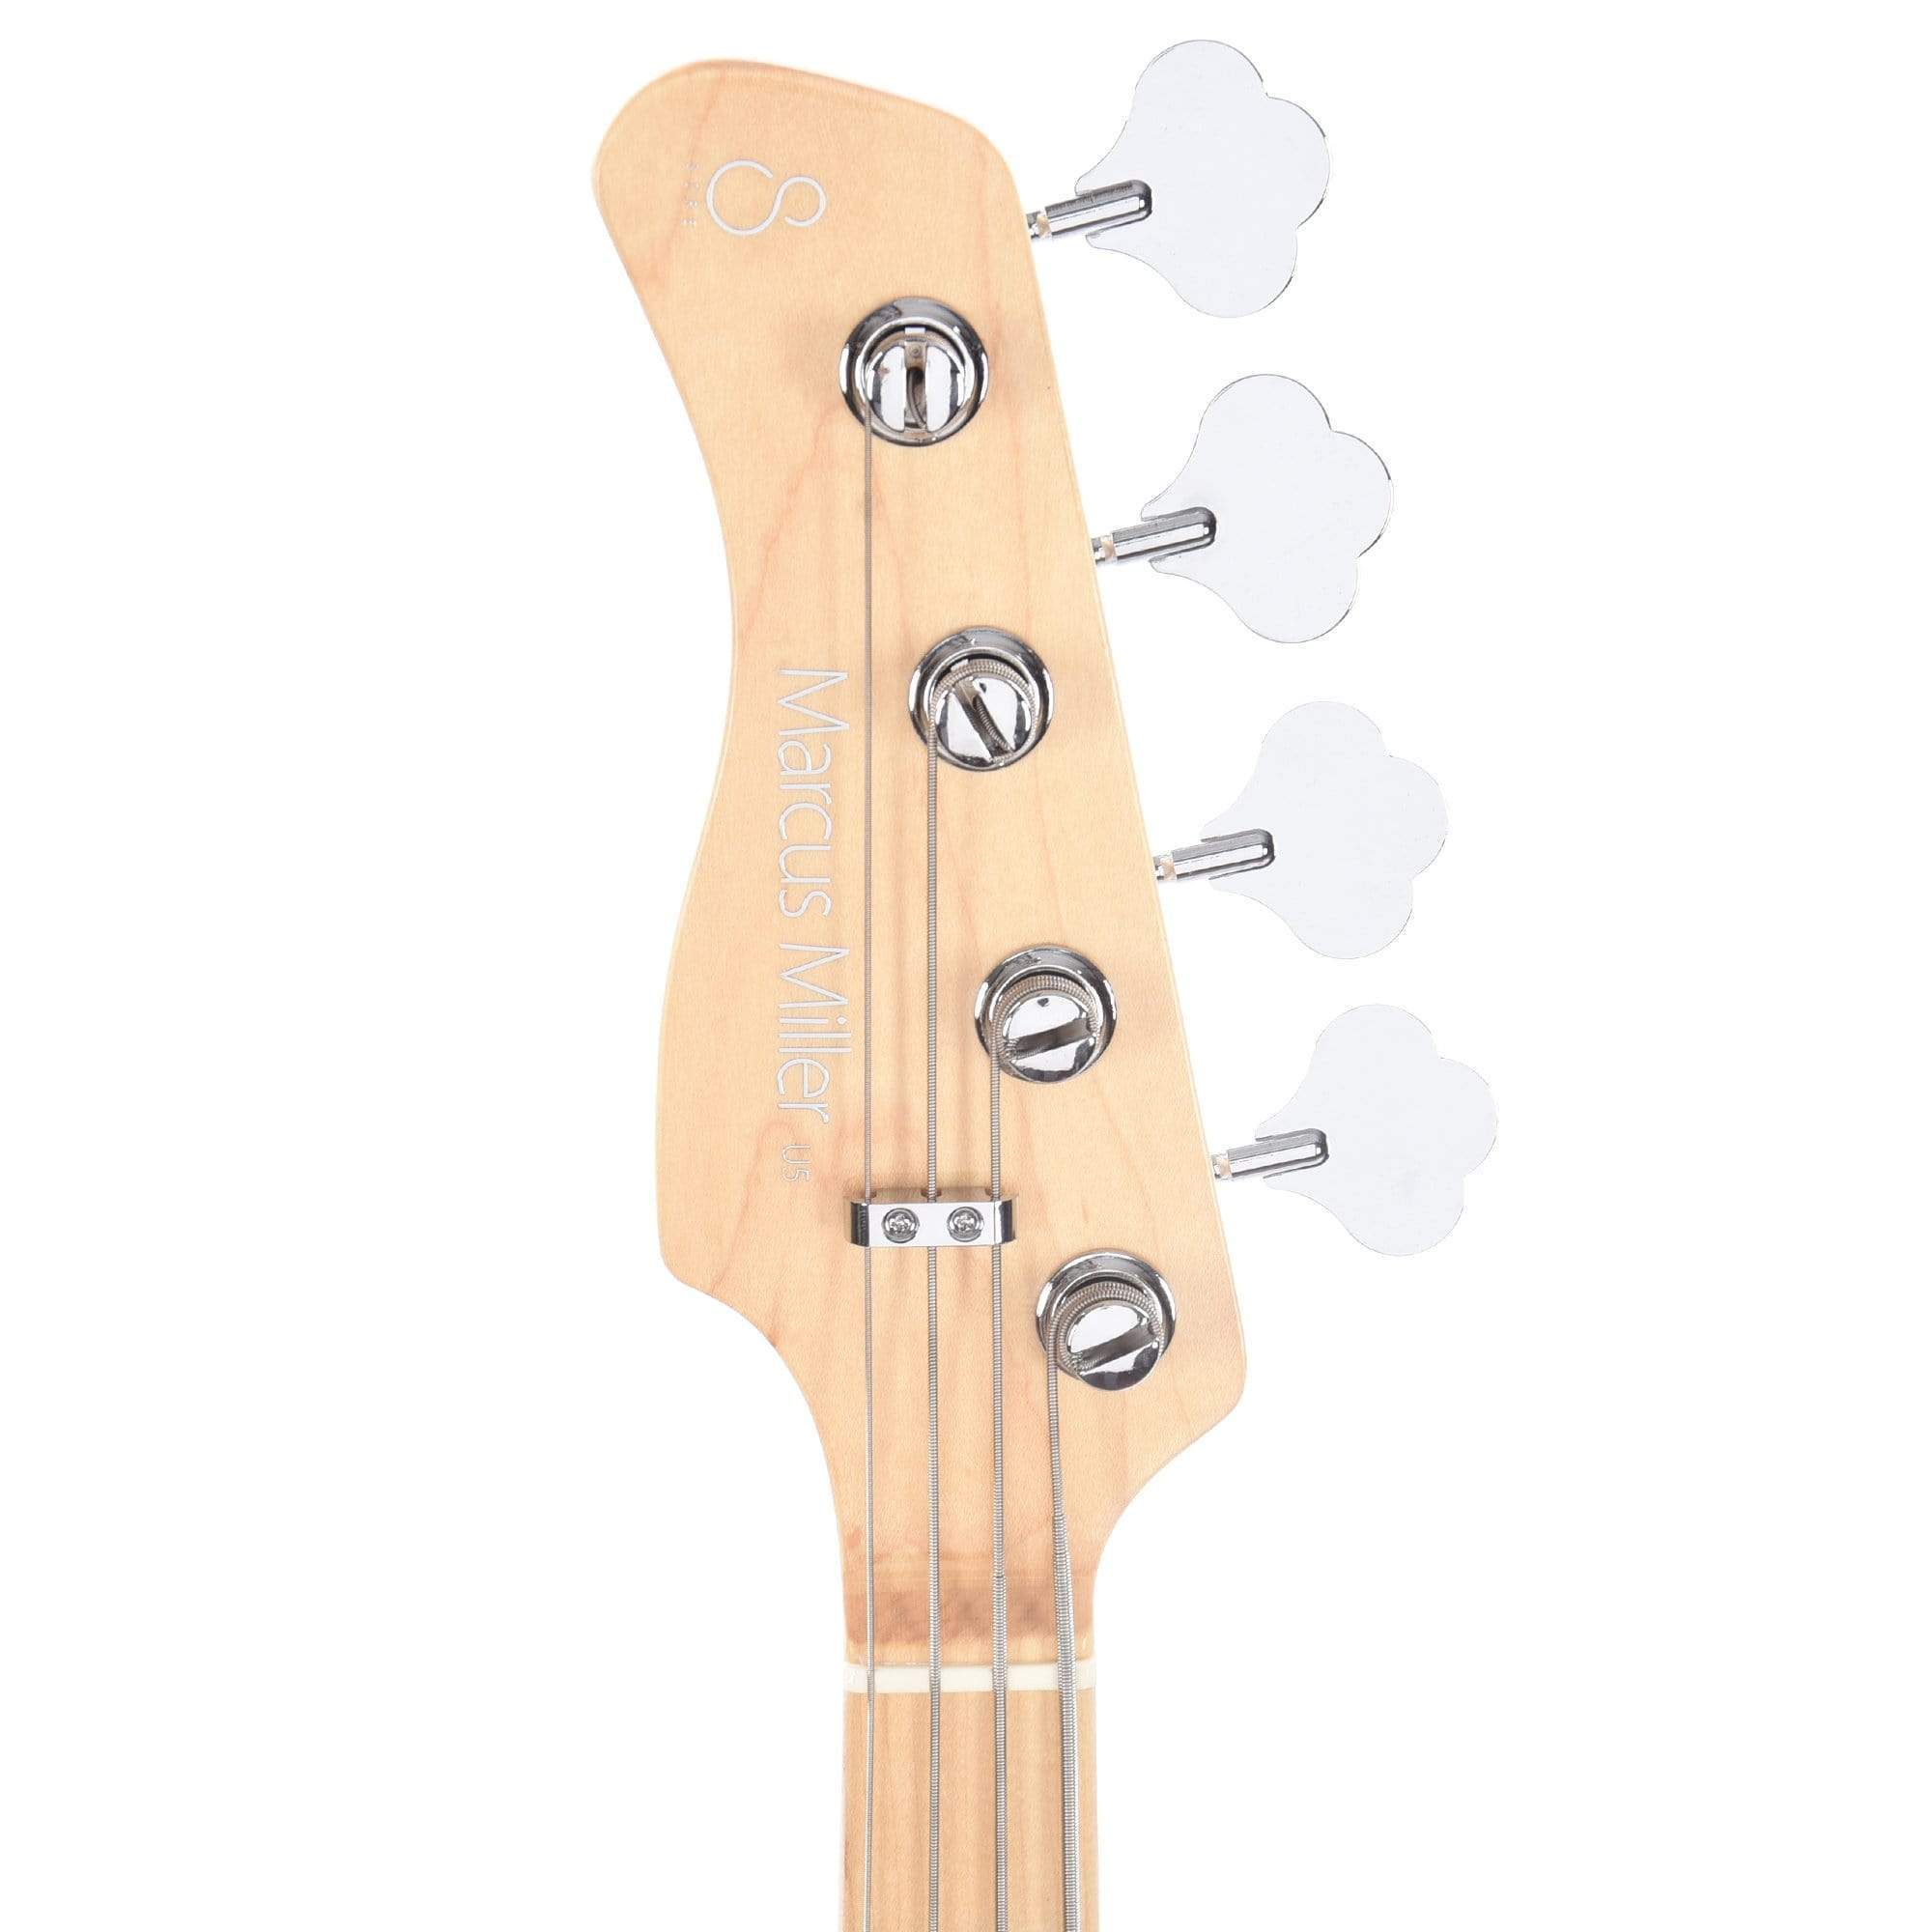 Sire Marcus Miller U5 Alder 4-String LEFTY Tobacco Sunburst (2nd Gen) Bass Guitars / Left-Handed